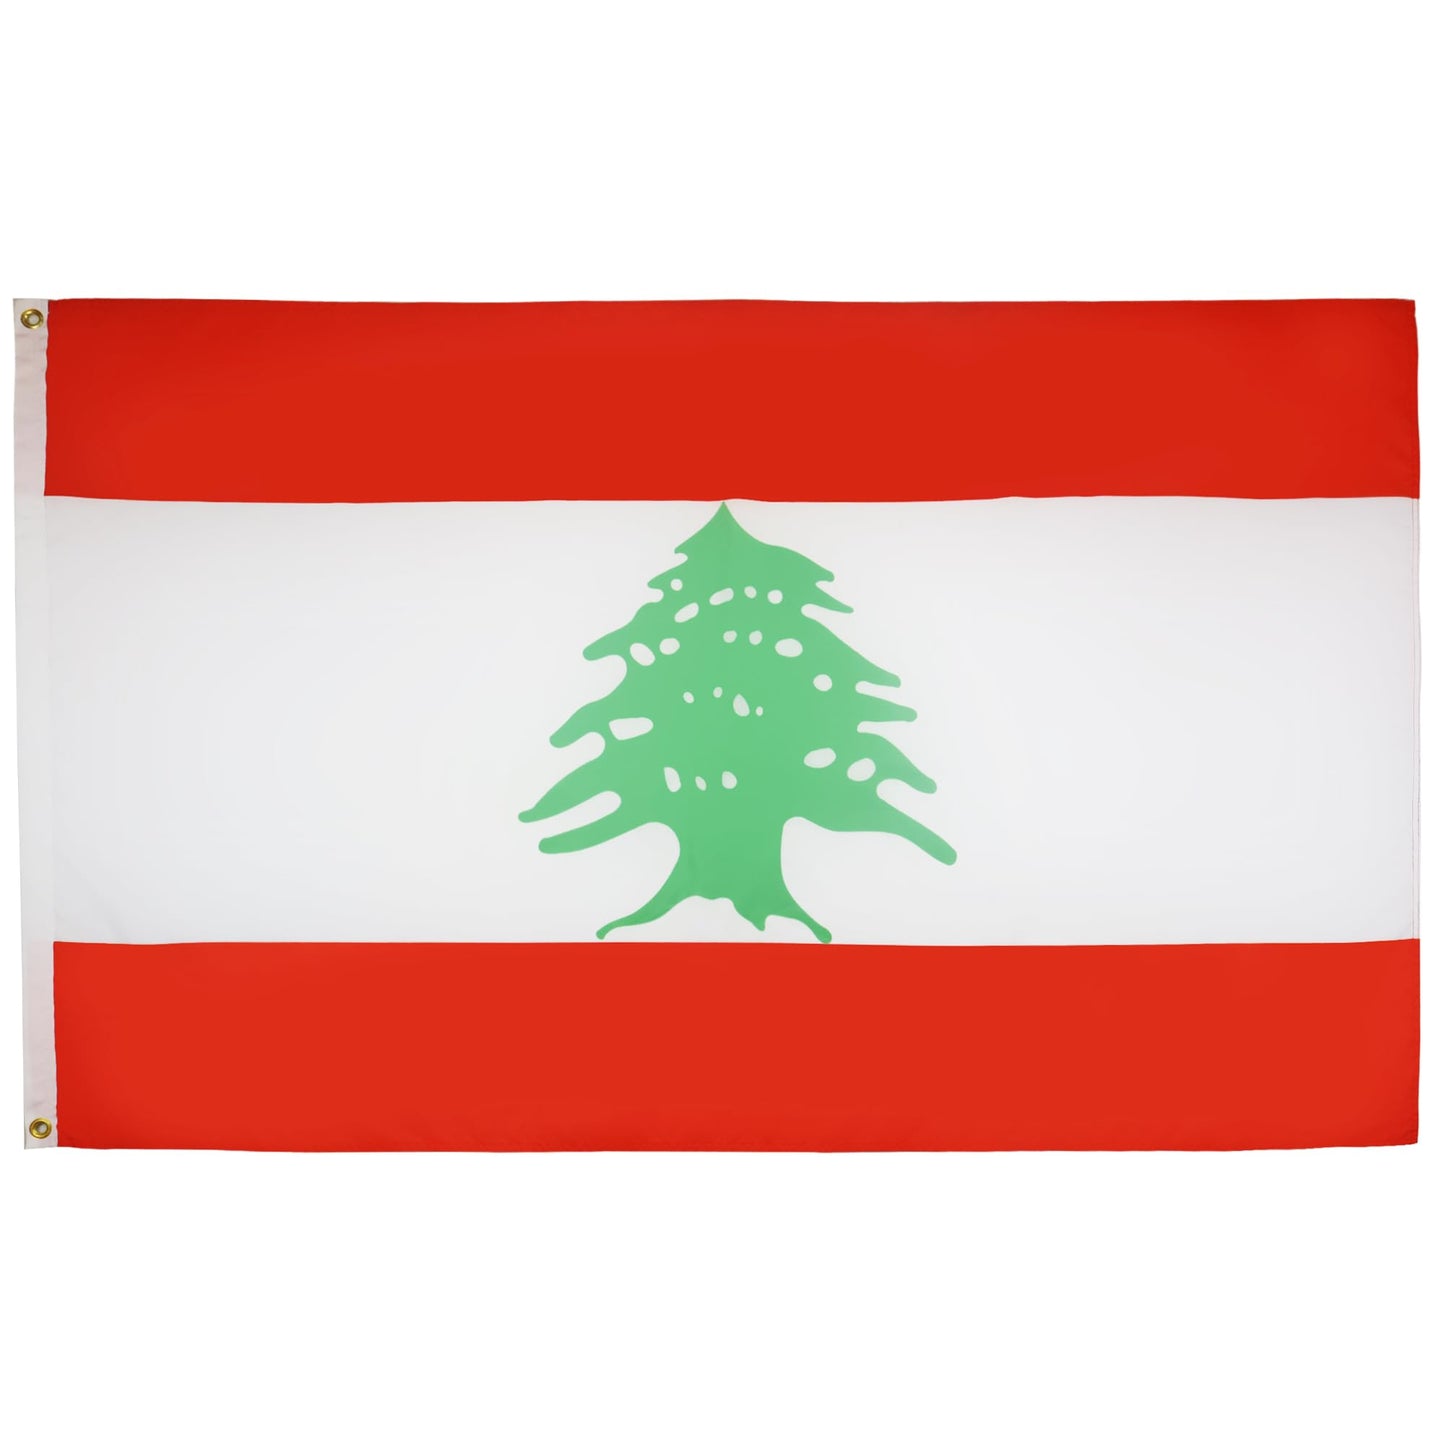 Lebanon Flag 🇱🇧 || علم لبنان